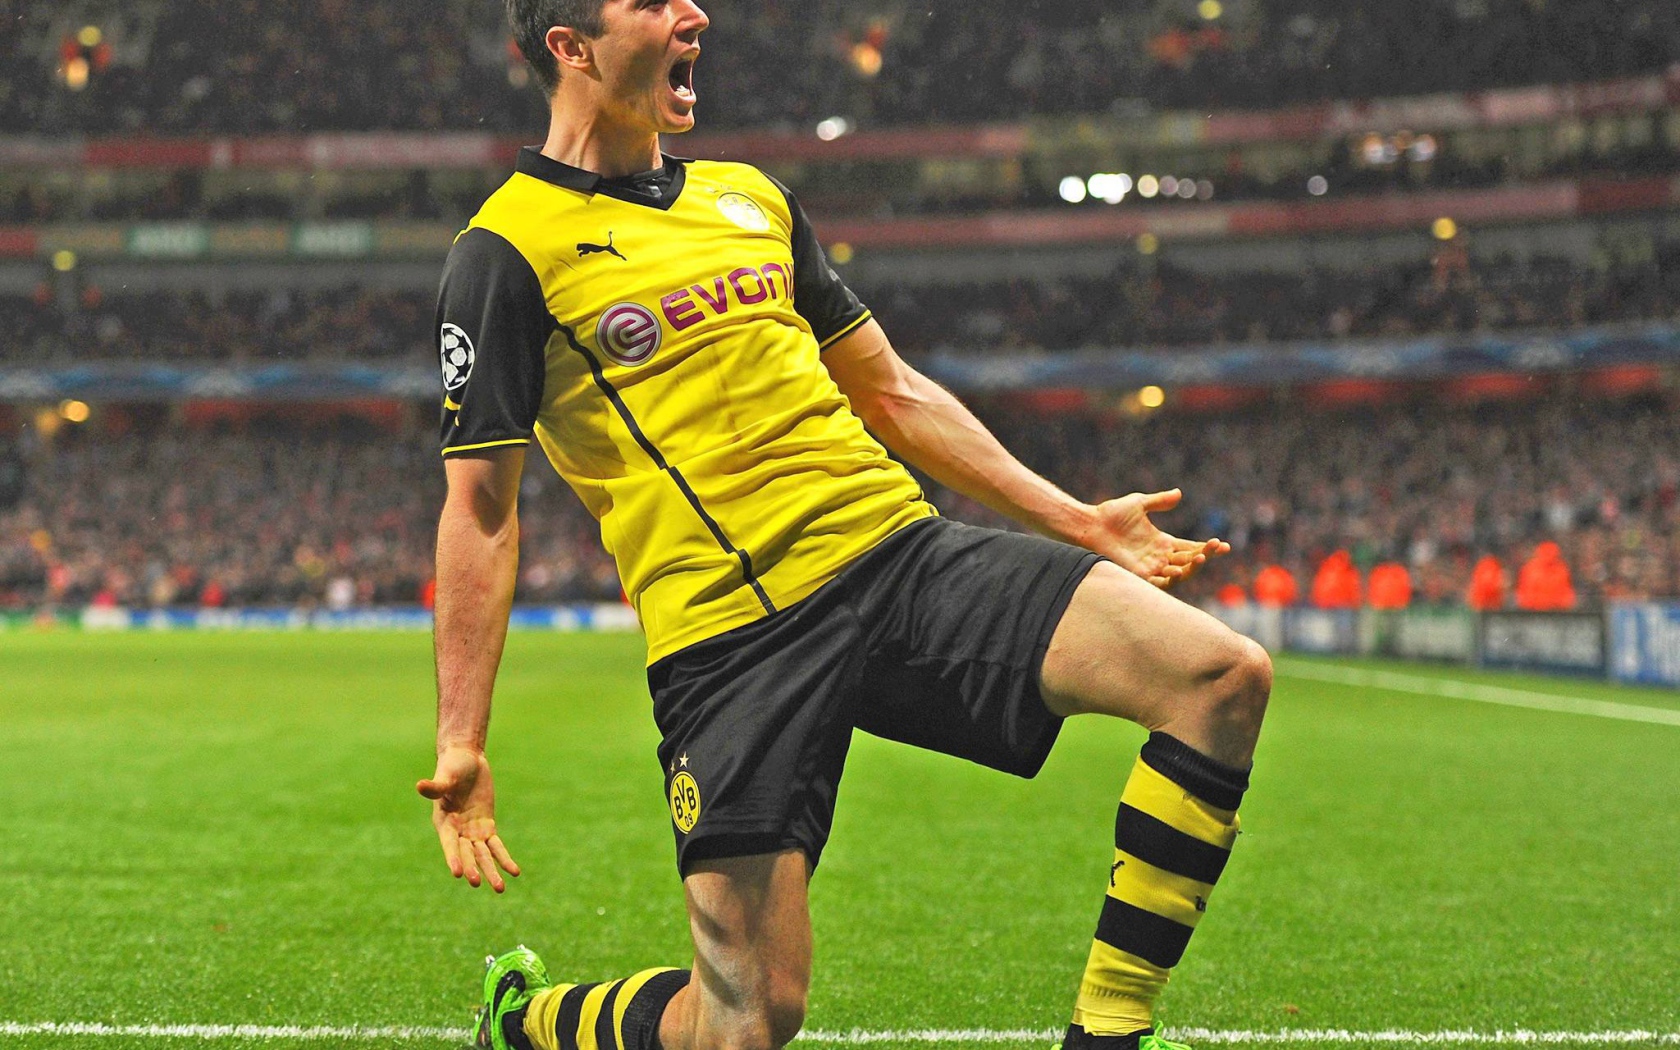 The best midfielder of Dortmund Henrikh Mkhitaryan